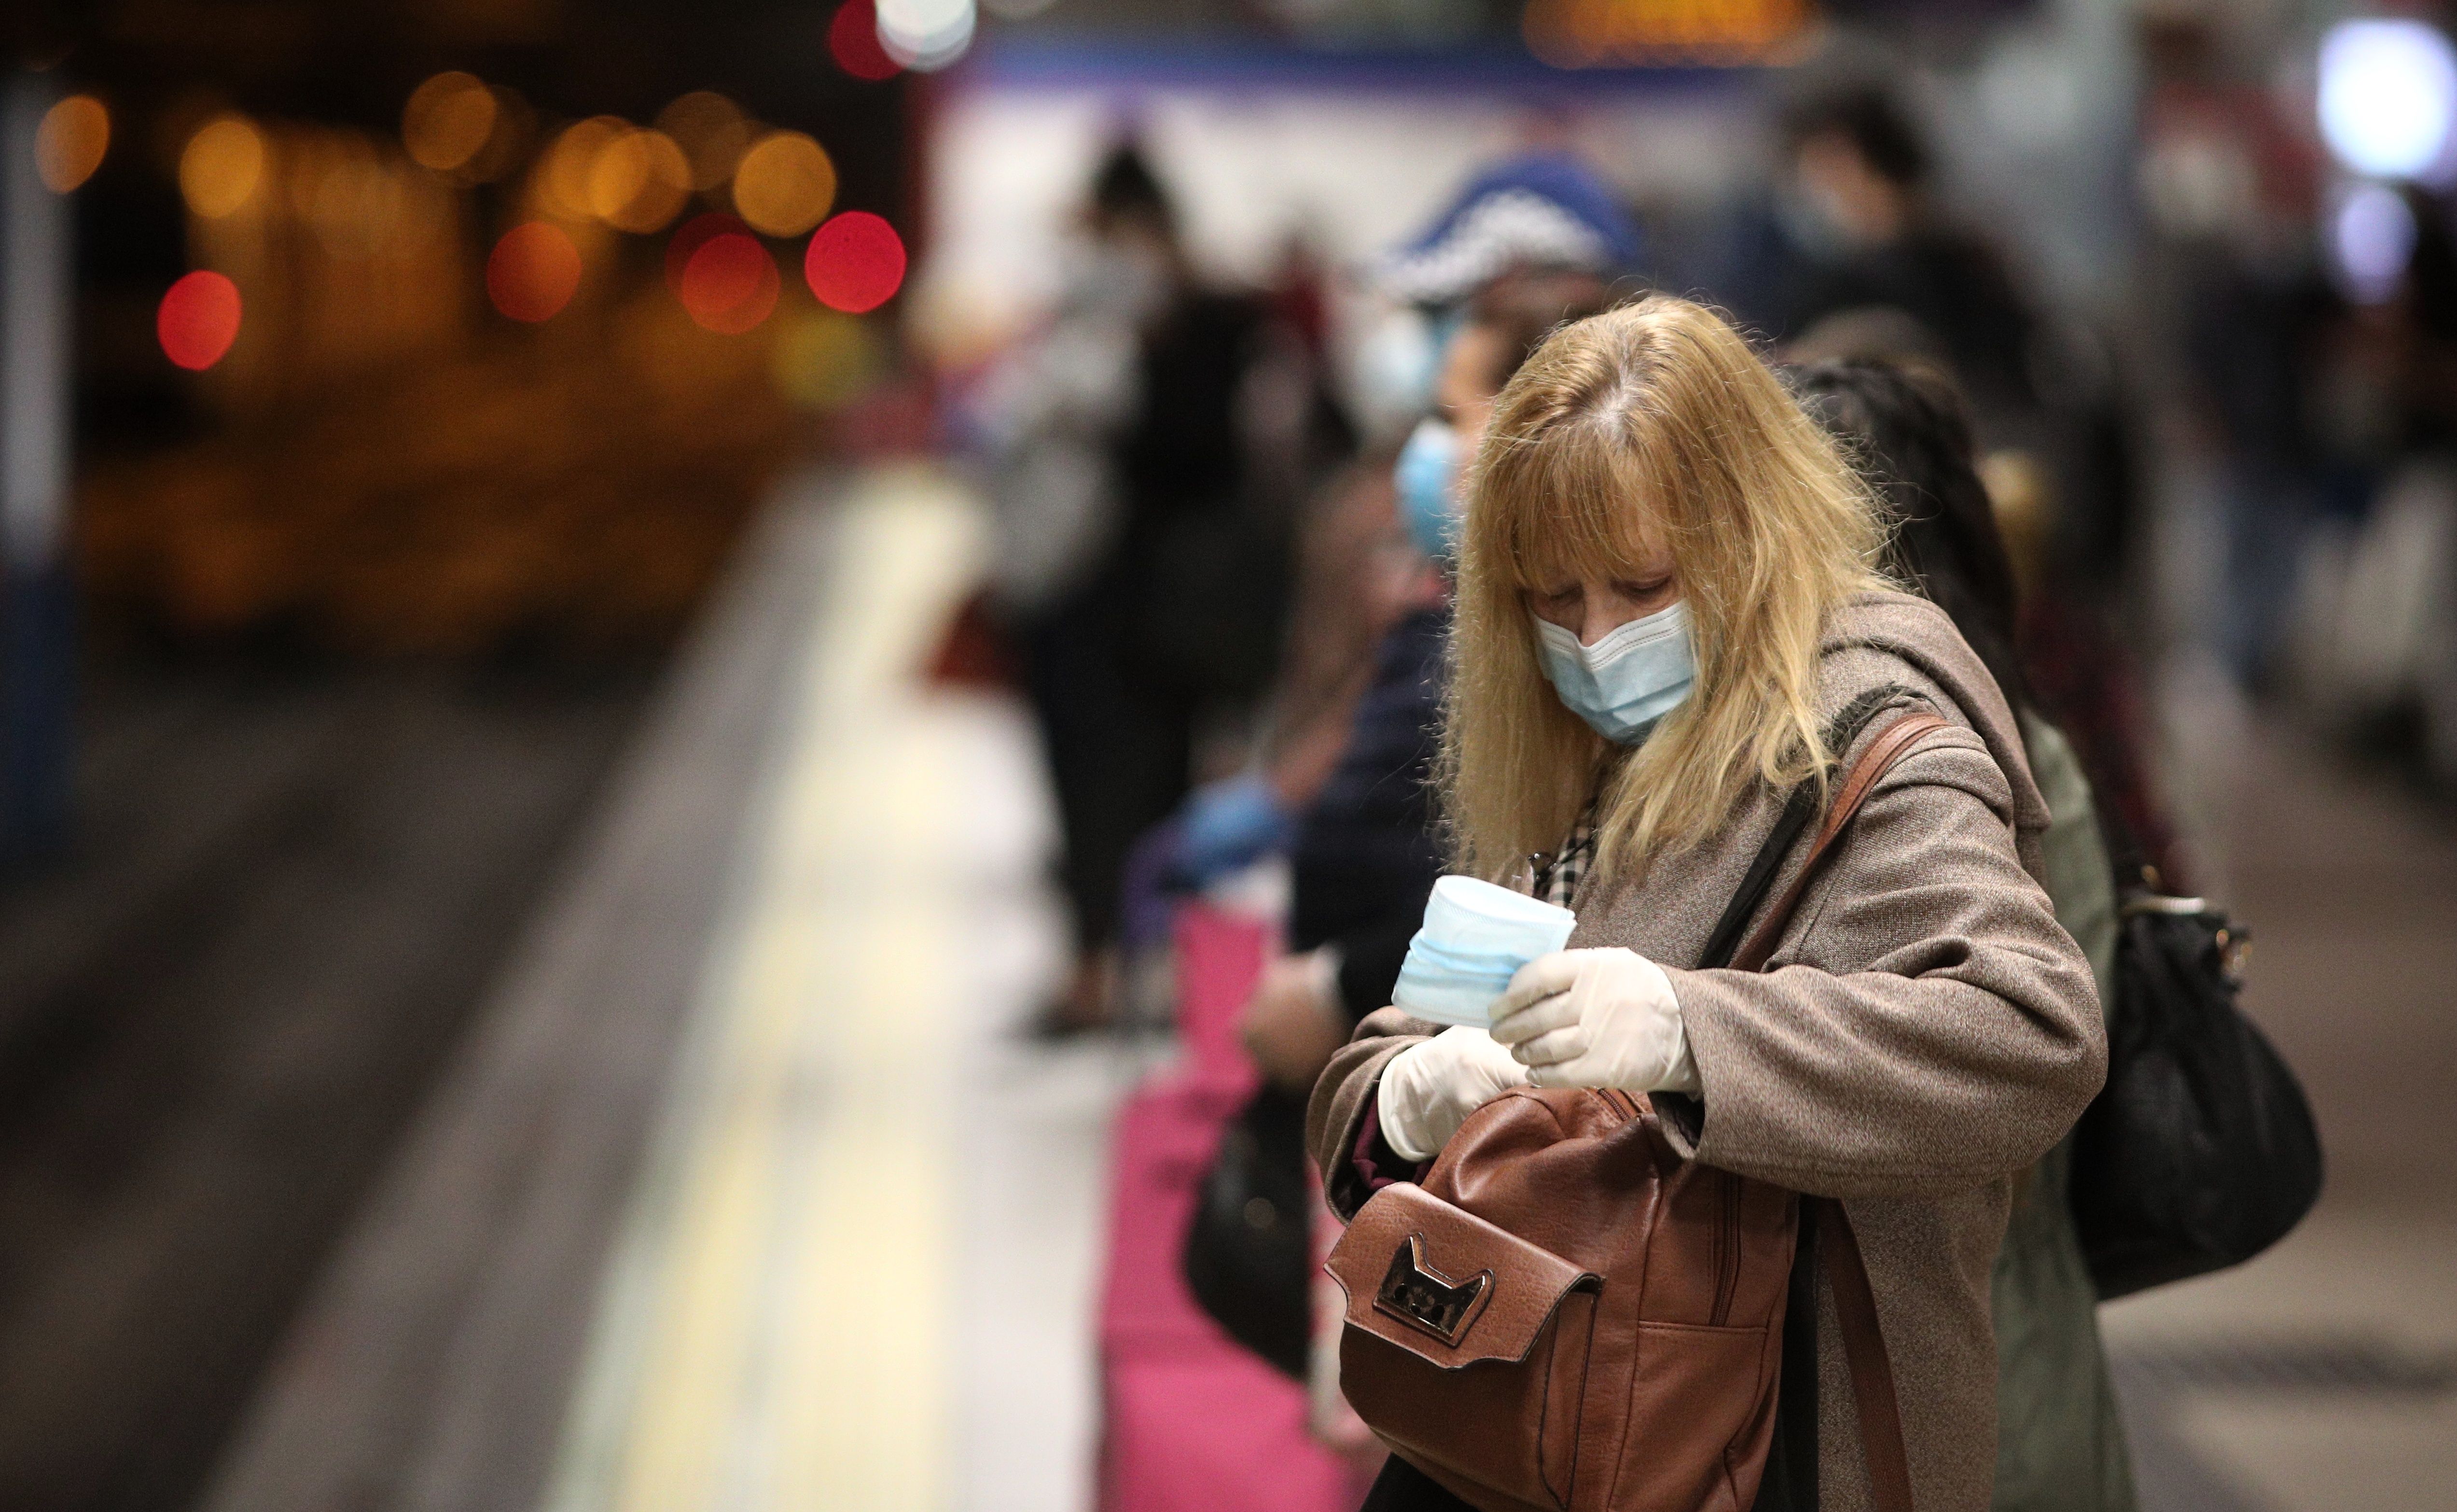 Mascarillas, distancia de seguridad y evitar hablar con otros pasajeros: normas para ir en el metro